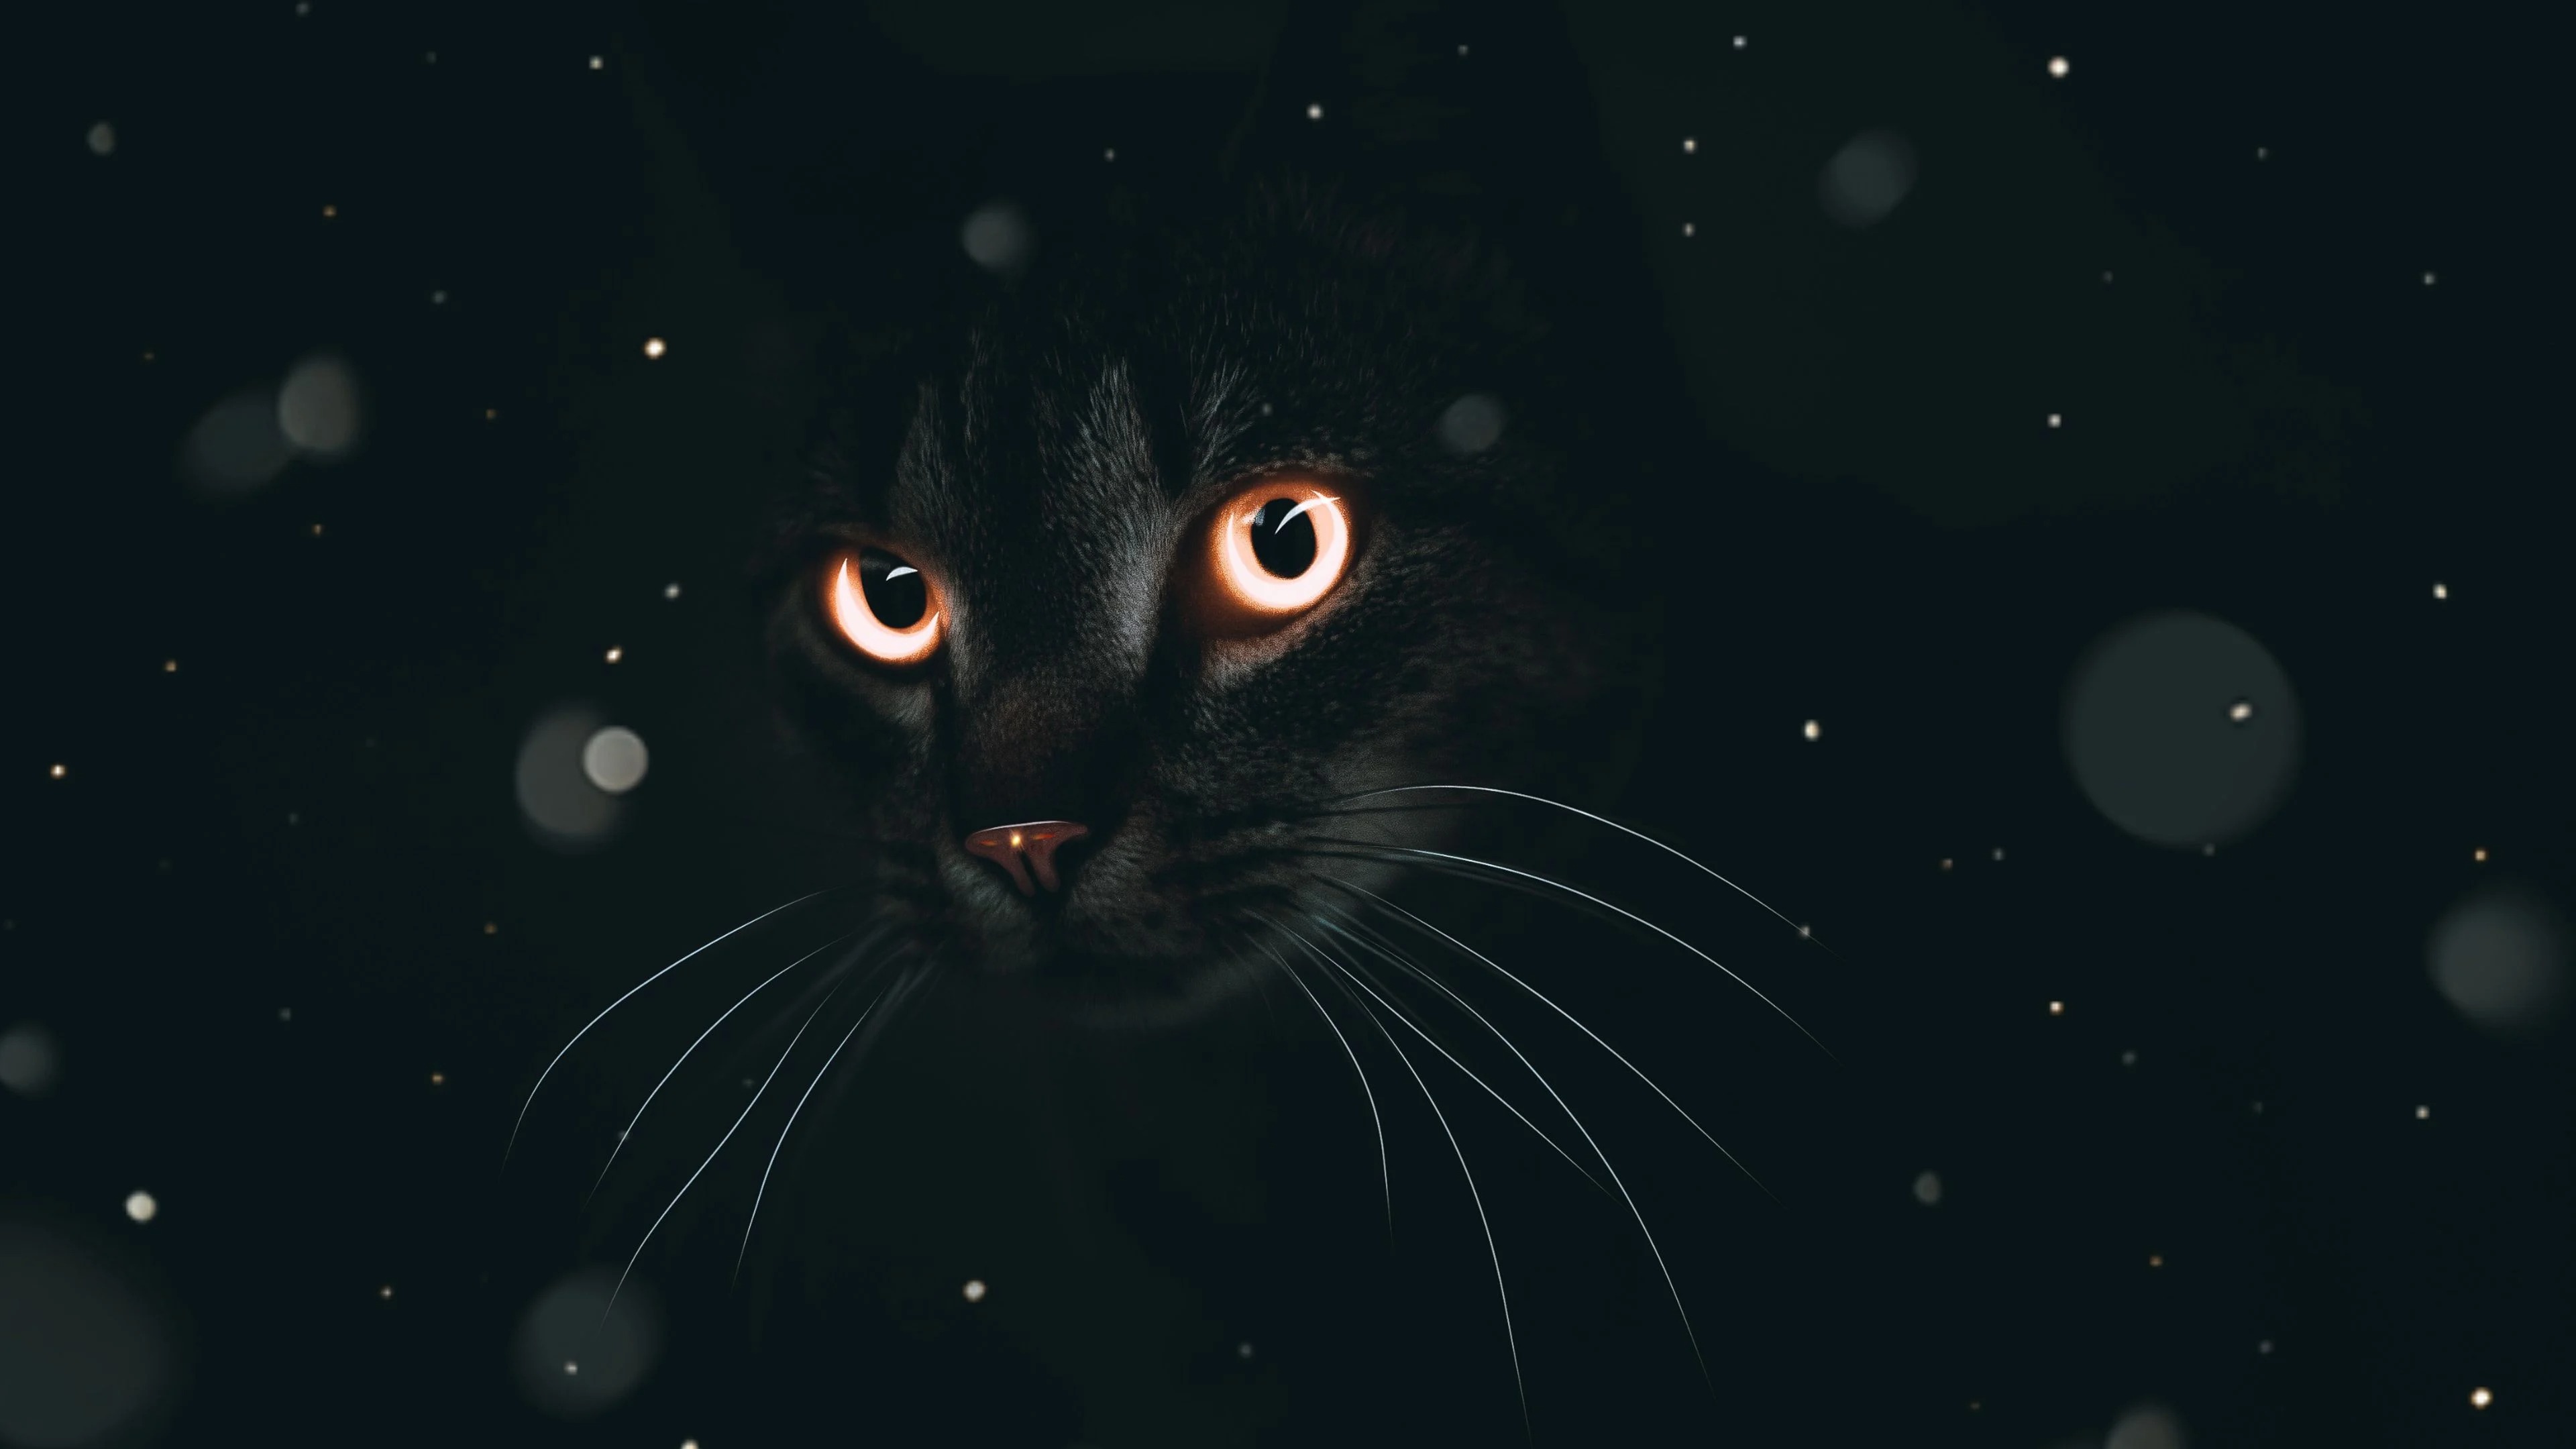 Hãy chiêm ngưỡng những bức hình mèo đen đẹp nhất. Những con mèo đầy sinh động và nét đẹp được chụp lại bằng máy ảnh chuyên nghiệp sẽ làm bạn bị thu hút ngay lập tức.